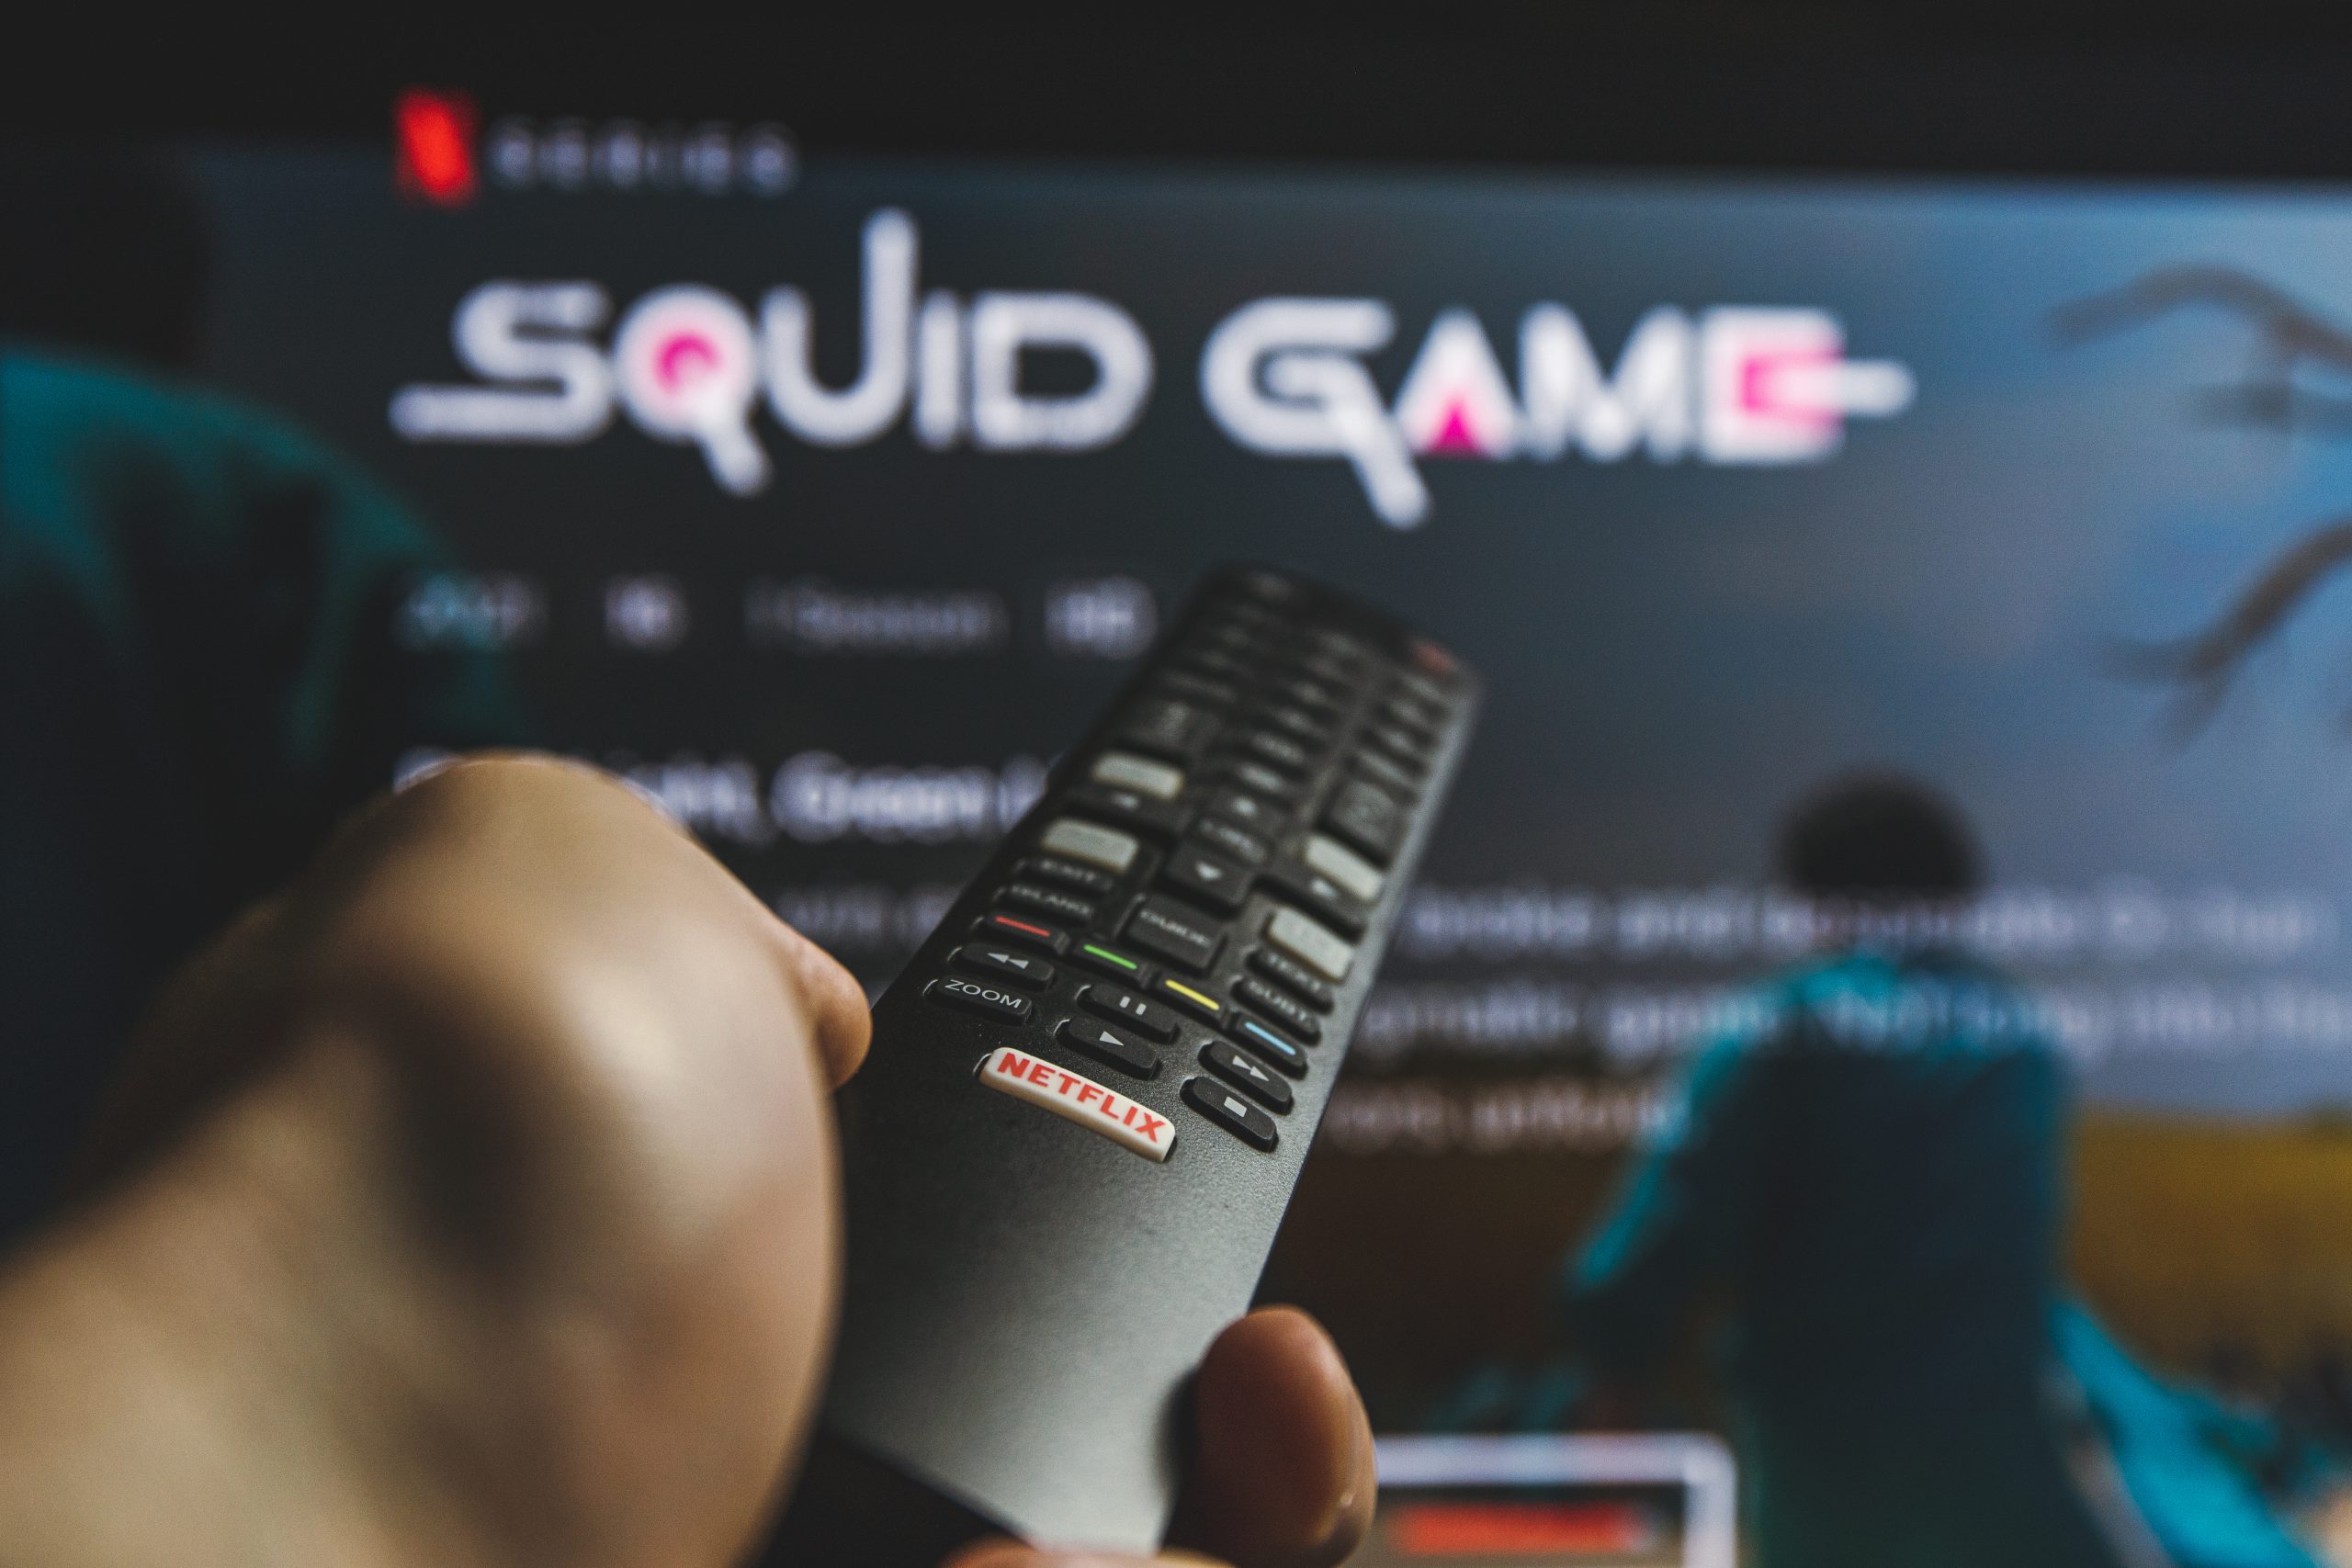 Serie Squid Game Netflix